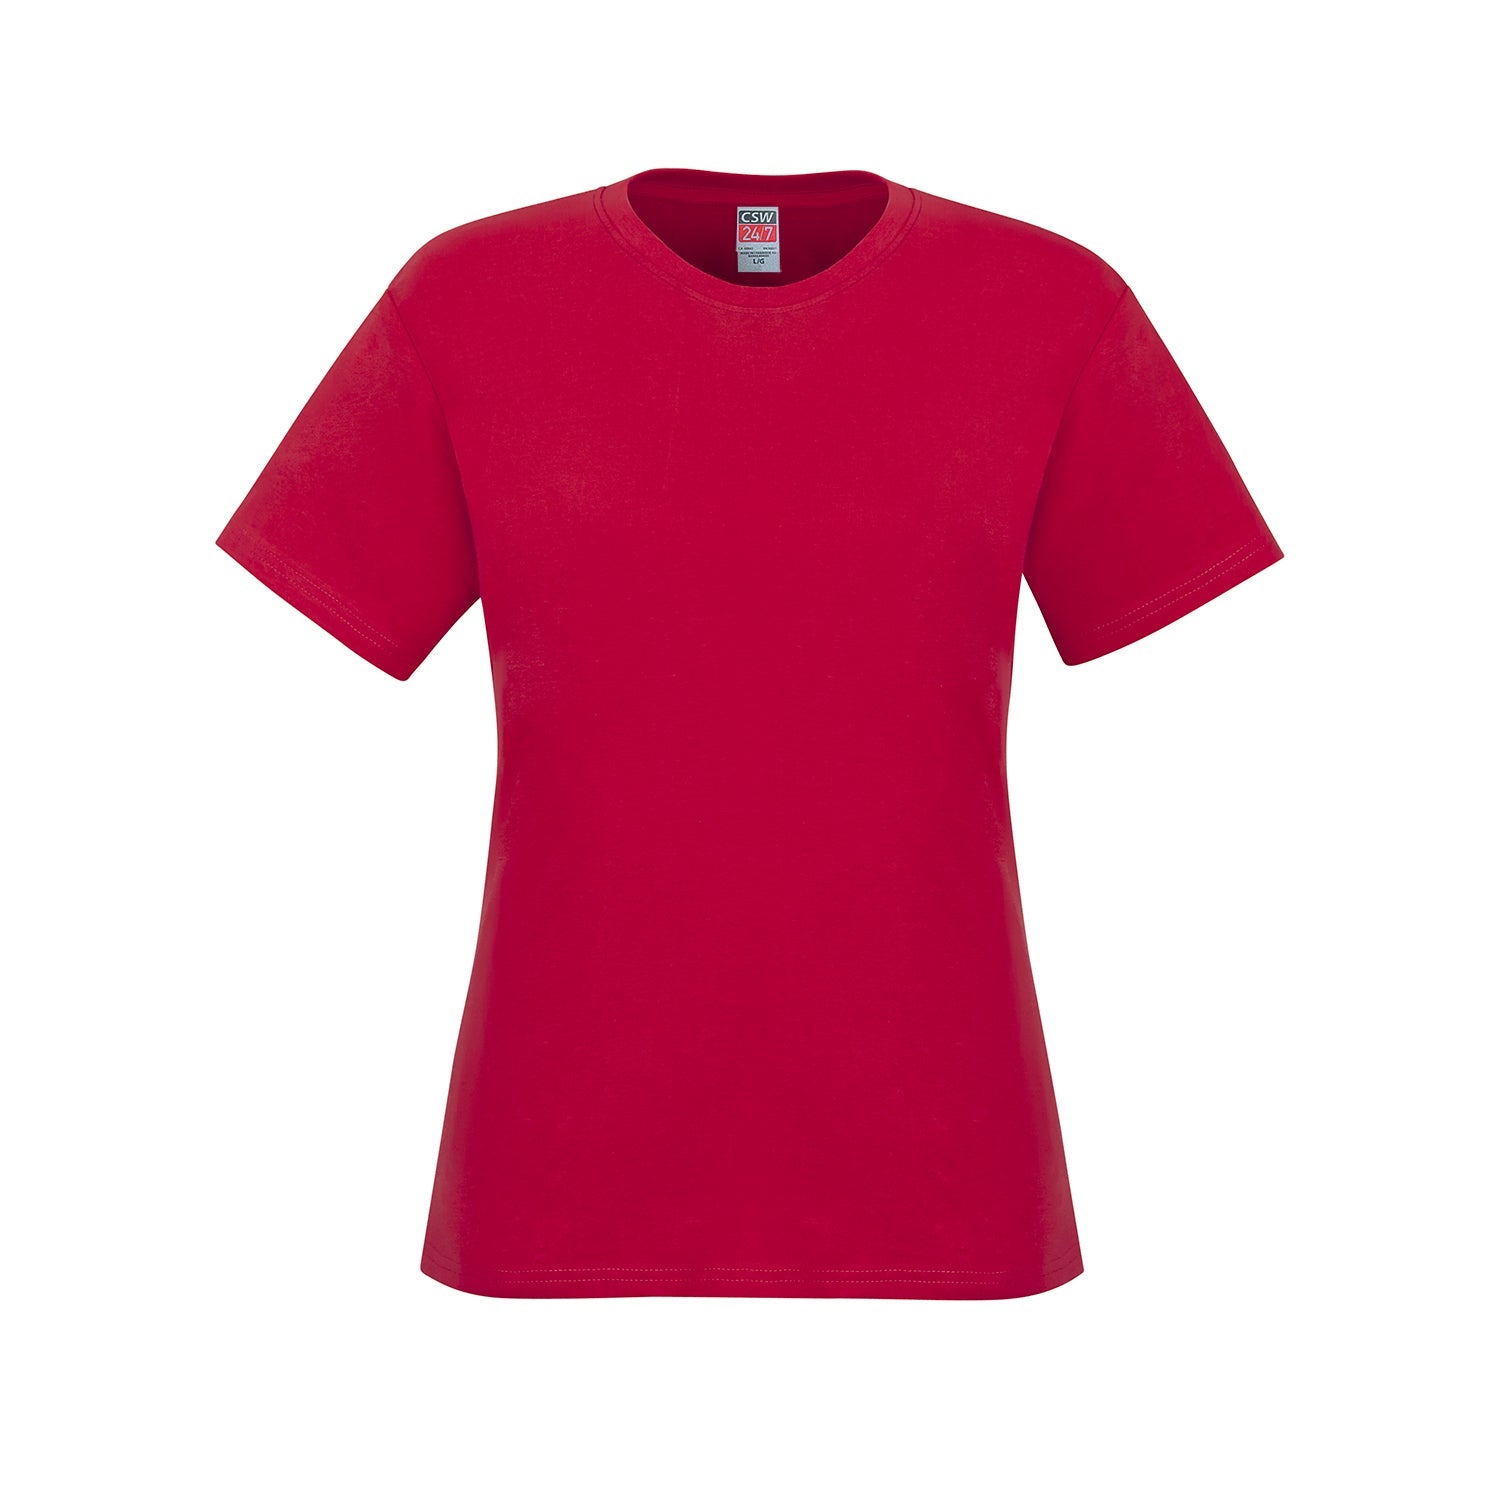 S05611 - Parkour - Ladies Crew Neck Cotton T-Shirt - Red /